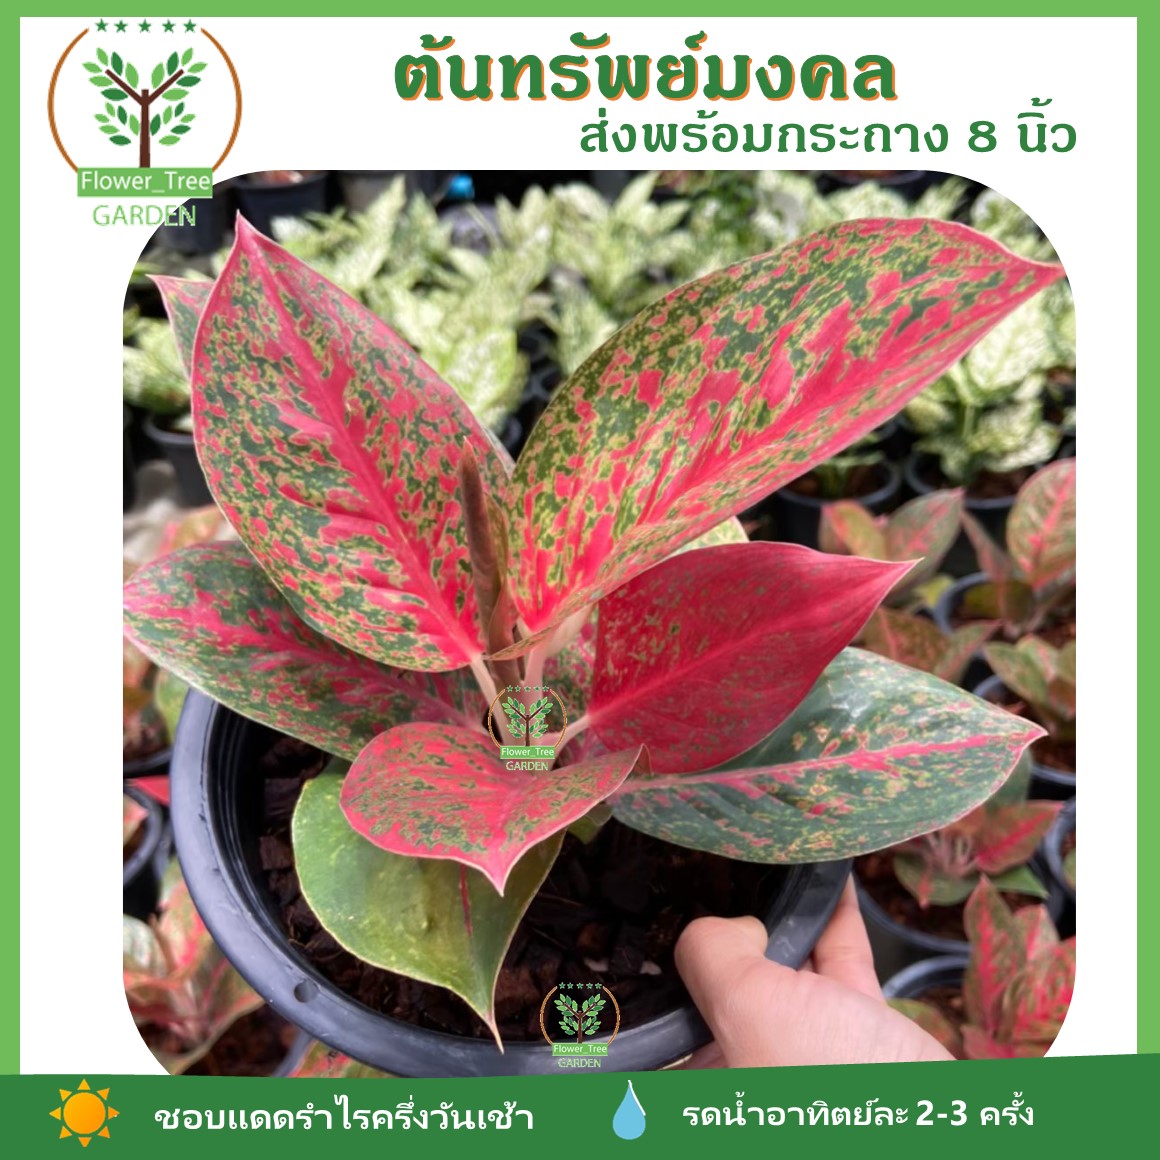 ต้นทรัพย์มงคล ไม้มงคล สีแดง ขายดีและเป็นที่นิยม ในกระถาง 6-8 นิ้ว ไม้ฟอกอากาศ  ปลูกในที่แดดรำไร - Flower_Tree_Garden - Thaipick